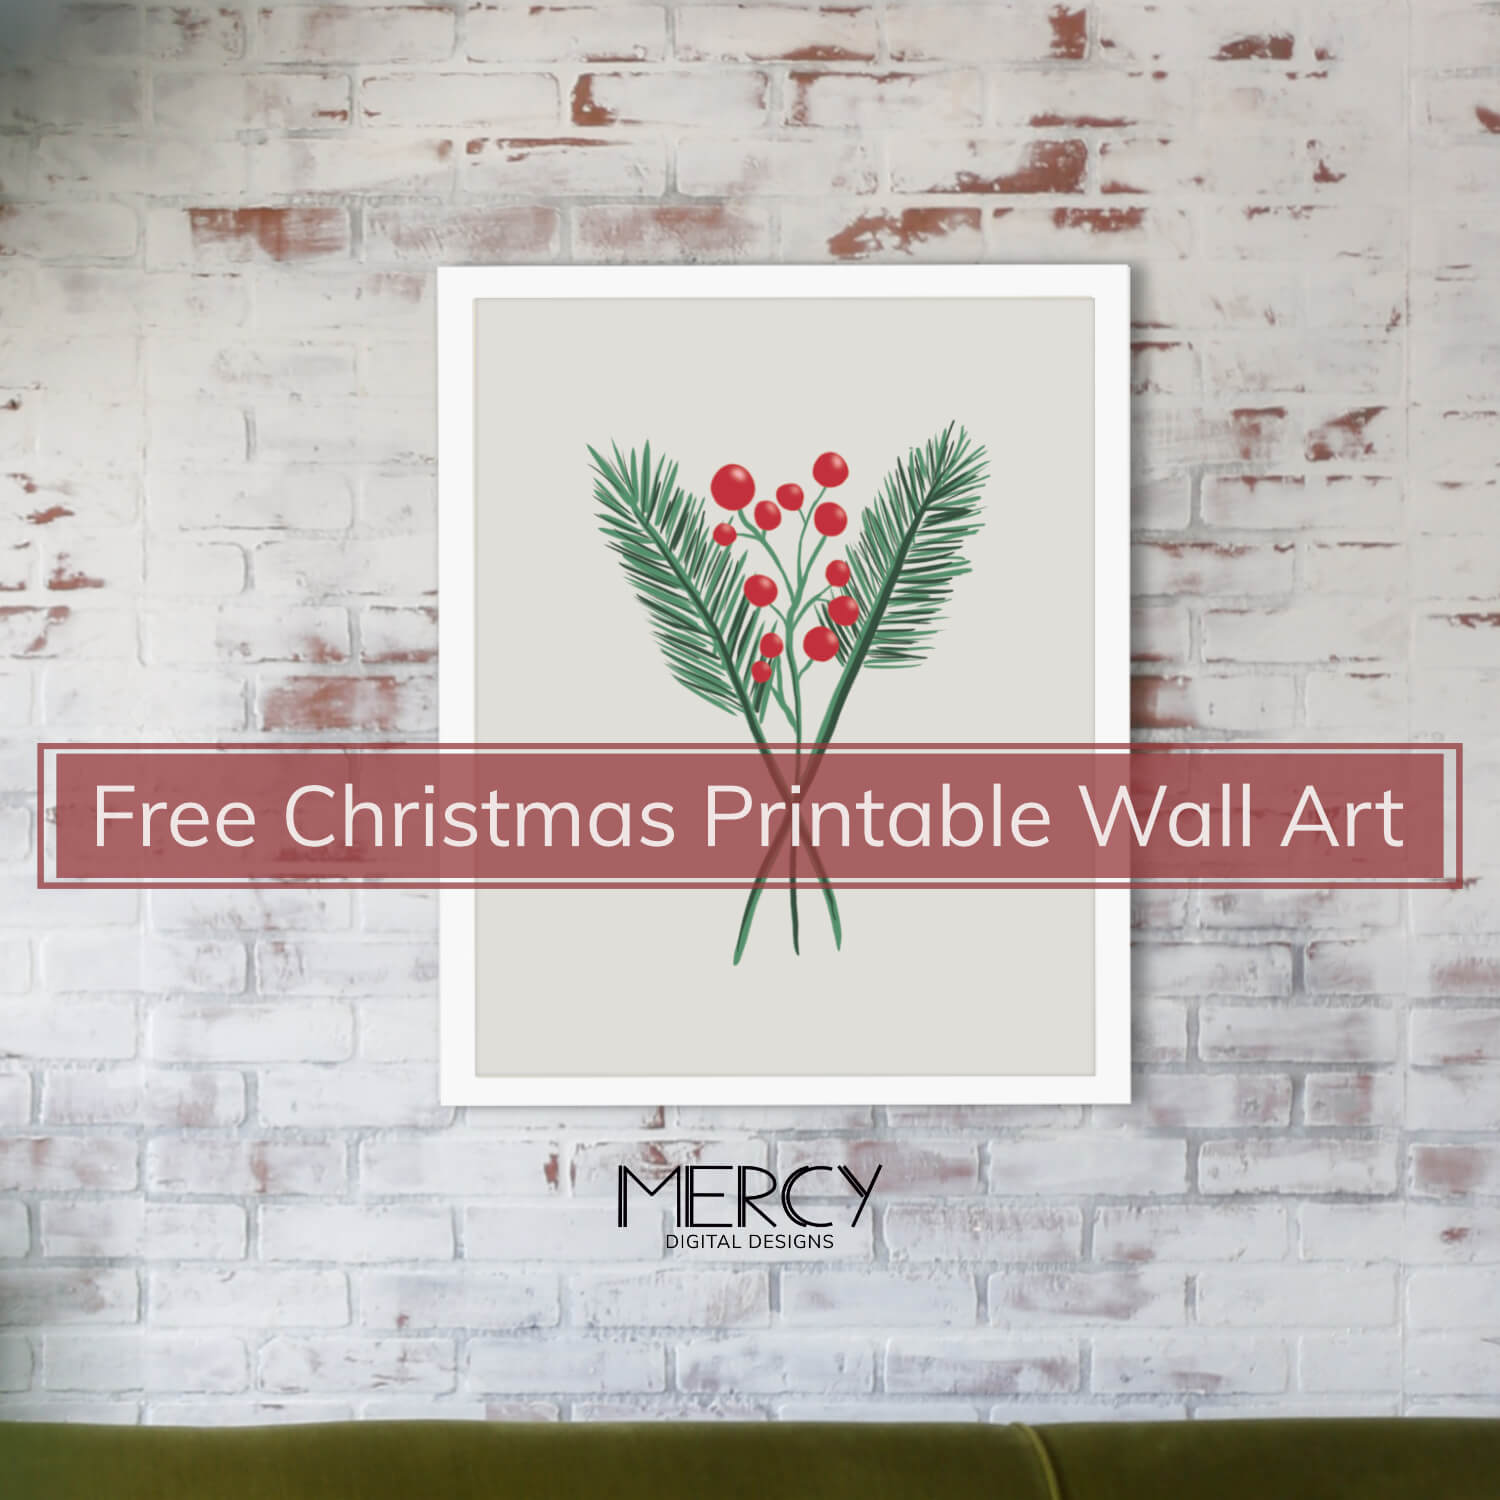 Printable Christmas Wall Art Free